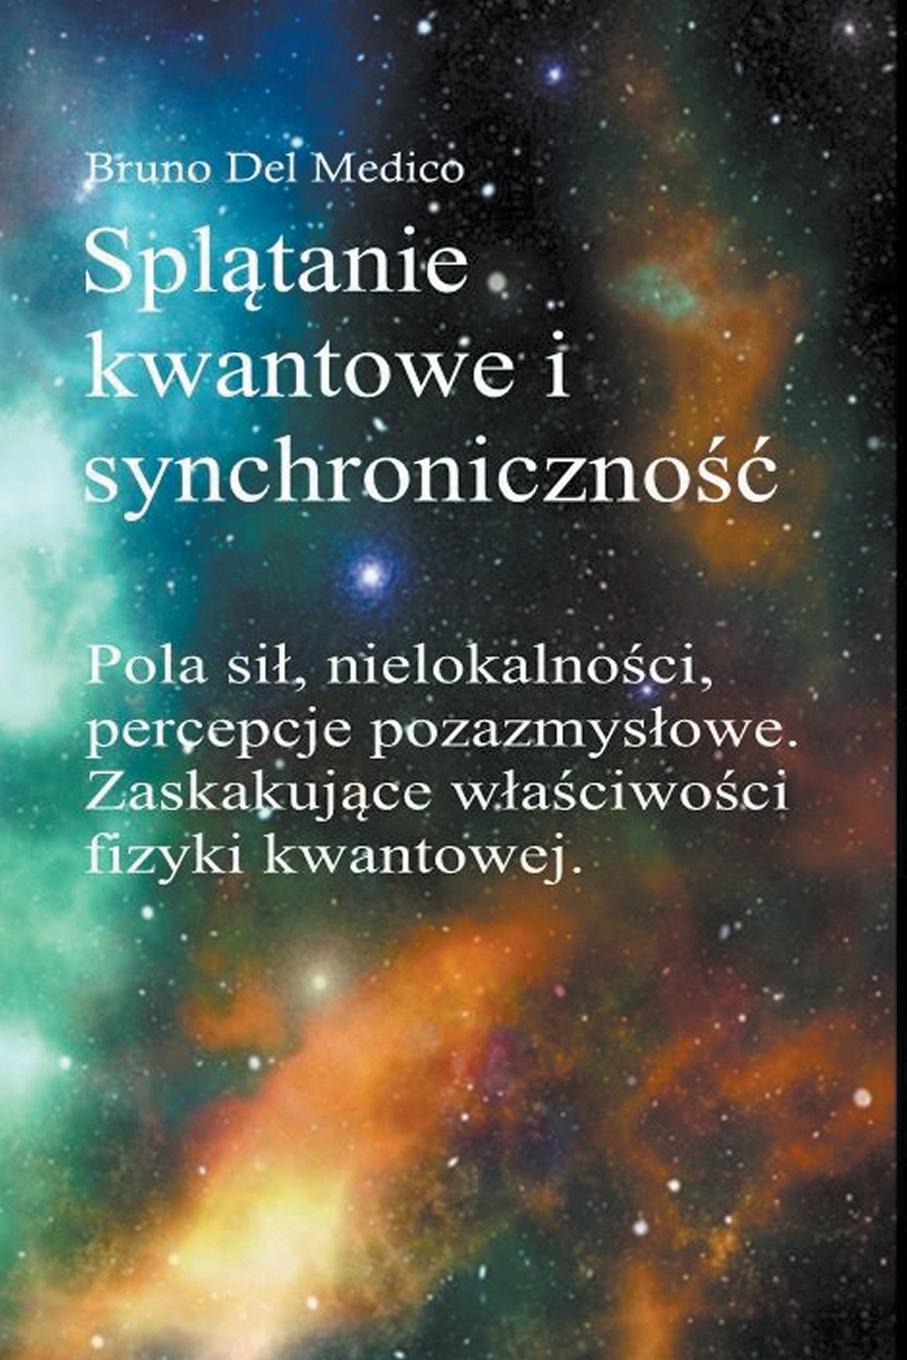 Book Splatanie kwantowe i synchronicznosc Carla Junga 